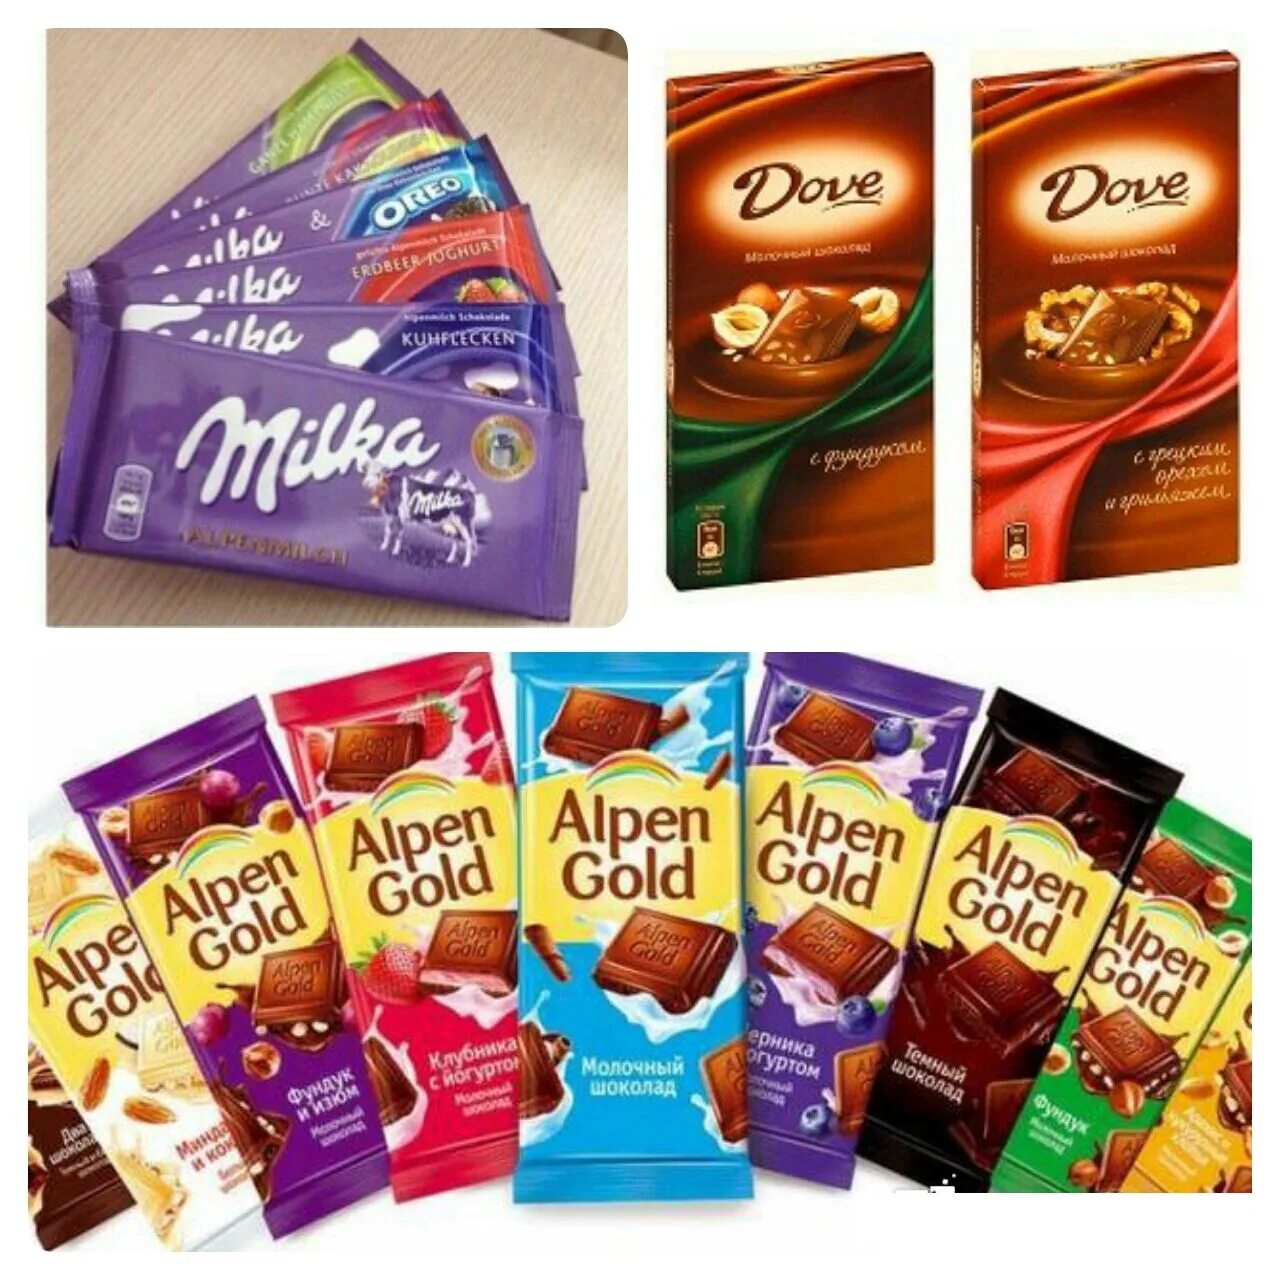 Шоколадный ассортимент. Альпен Гольд шоколад ассортимент. Альпен Гольд ассортимент шоколадок. Шоколад Alpen Gold 90гр молочный капучино. Шоколадки Альпен Гольд вкусы разные.